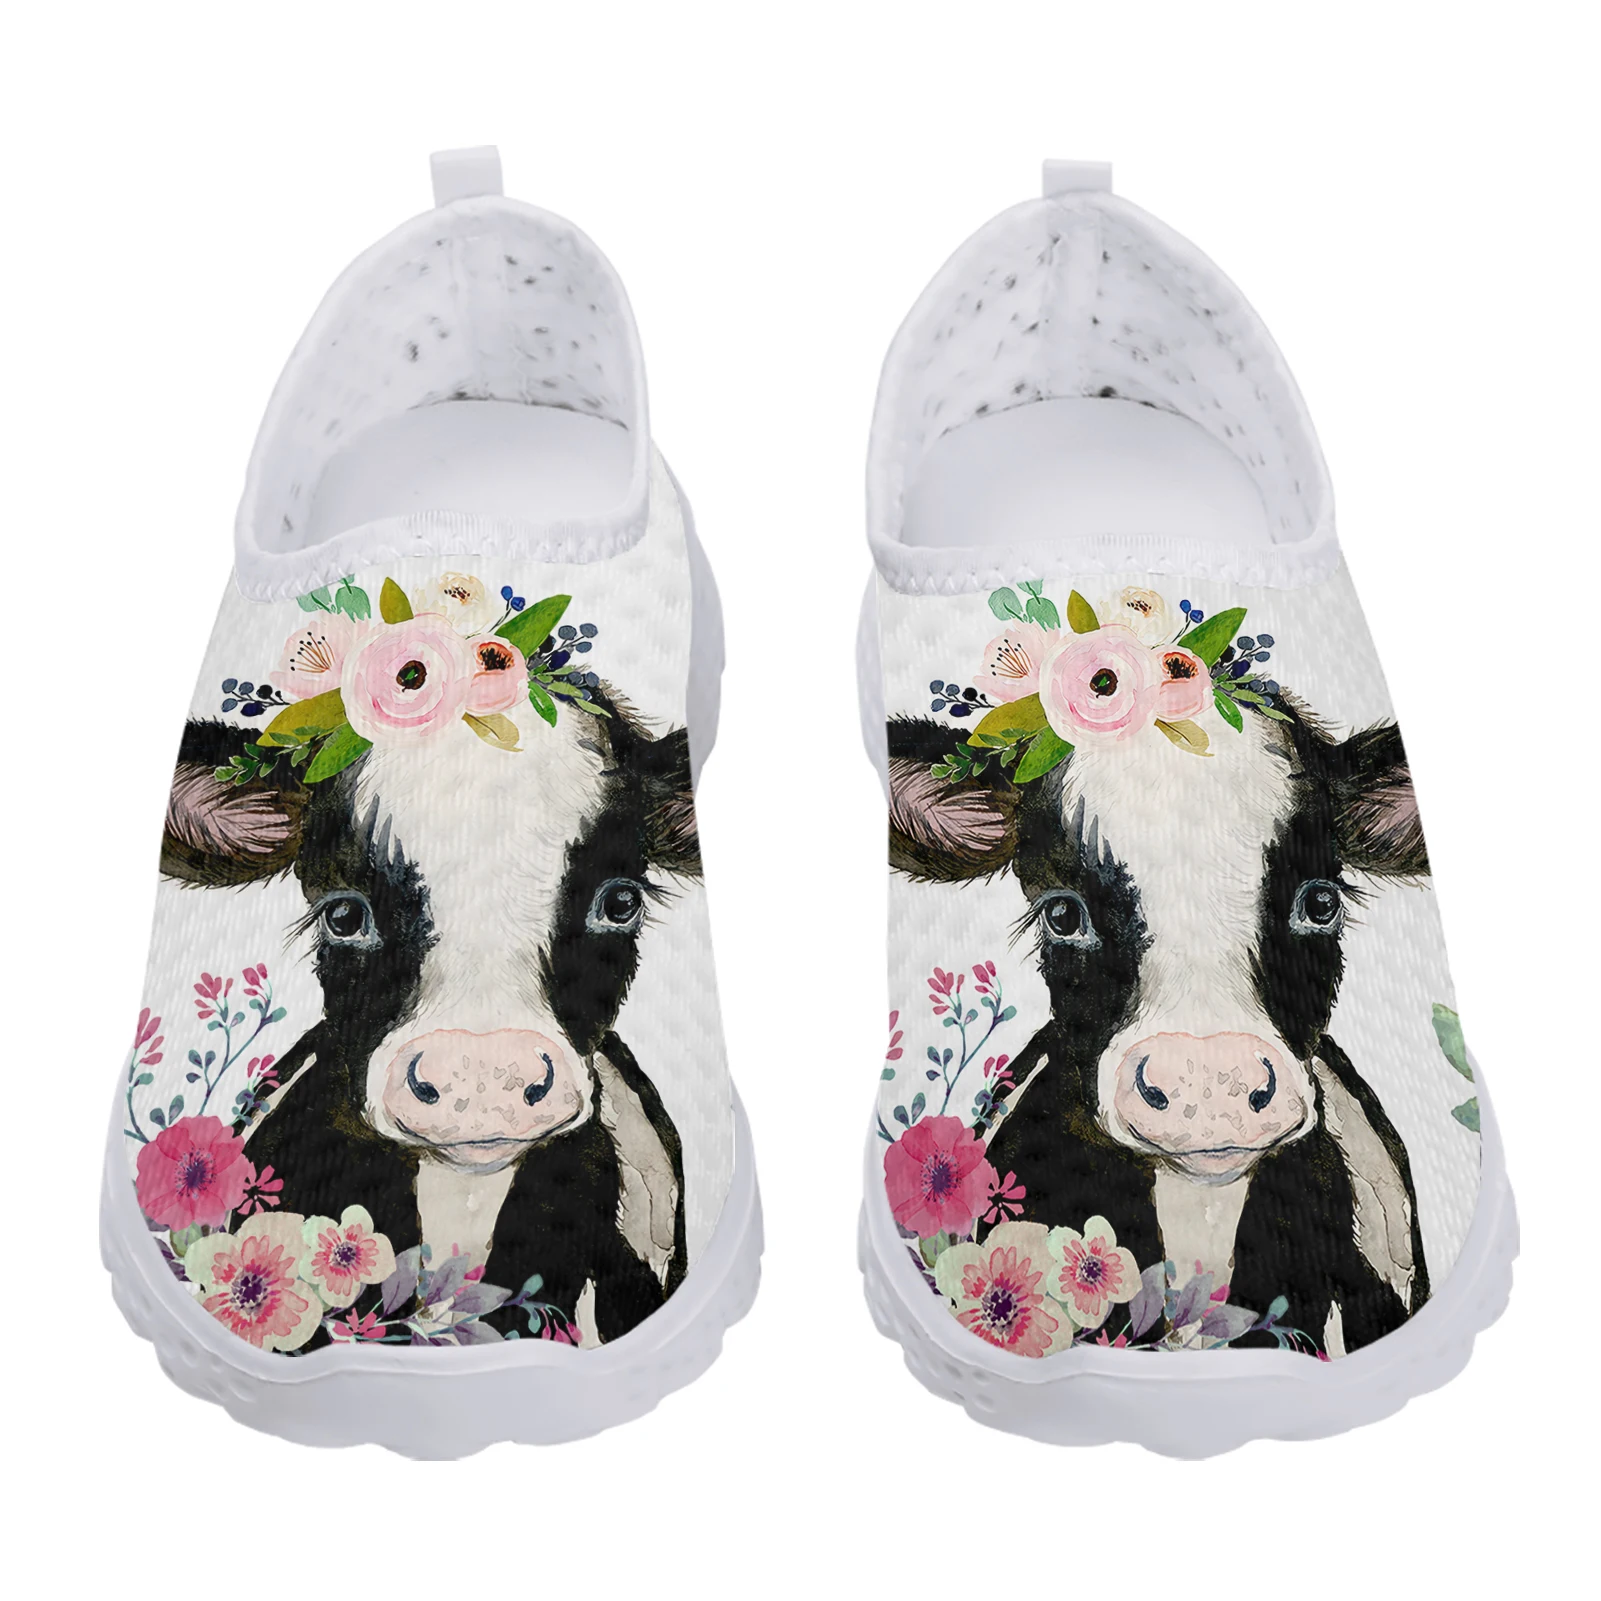 

Кроссовки женские сетчатые с 3D рисунком коровы и цветка, Повседневные Удобные легкие сникерсы без шнуровки, Нескользящие, популярная модель на лето